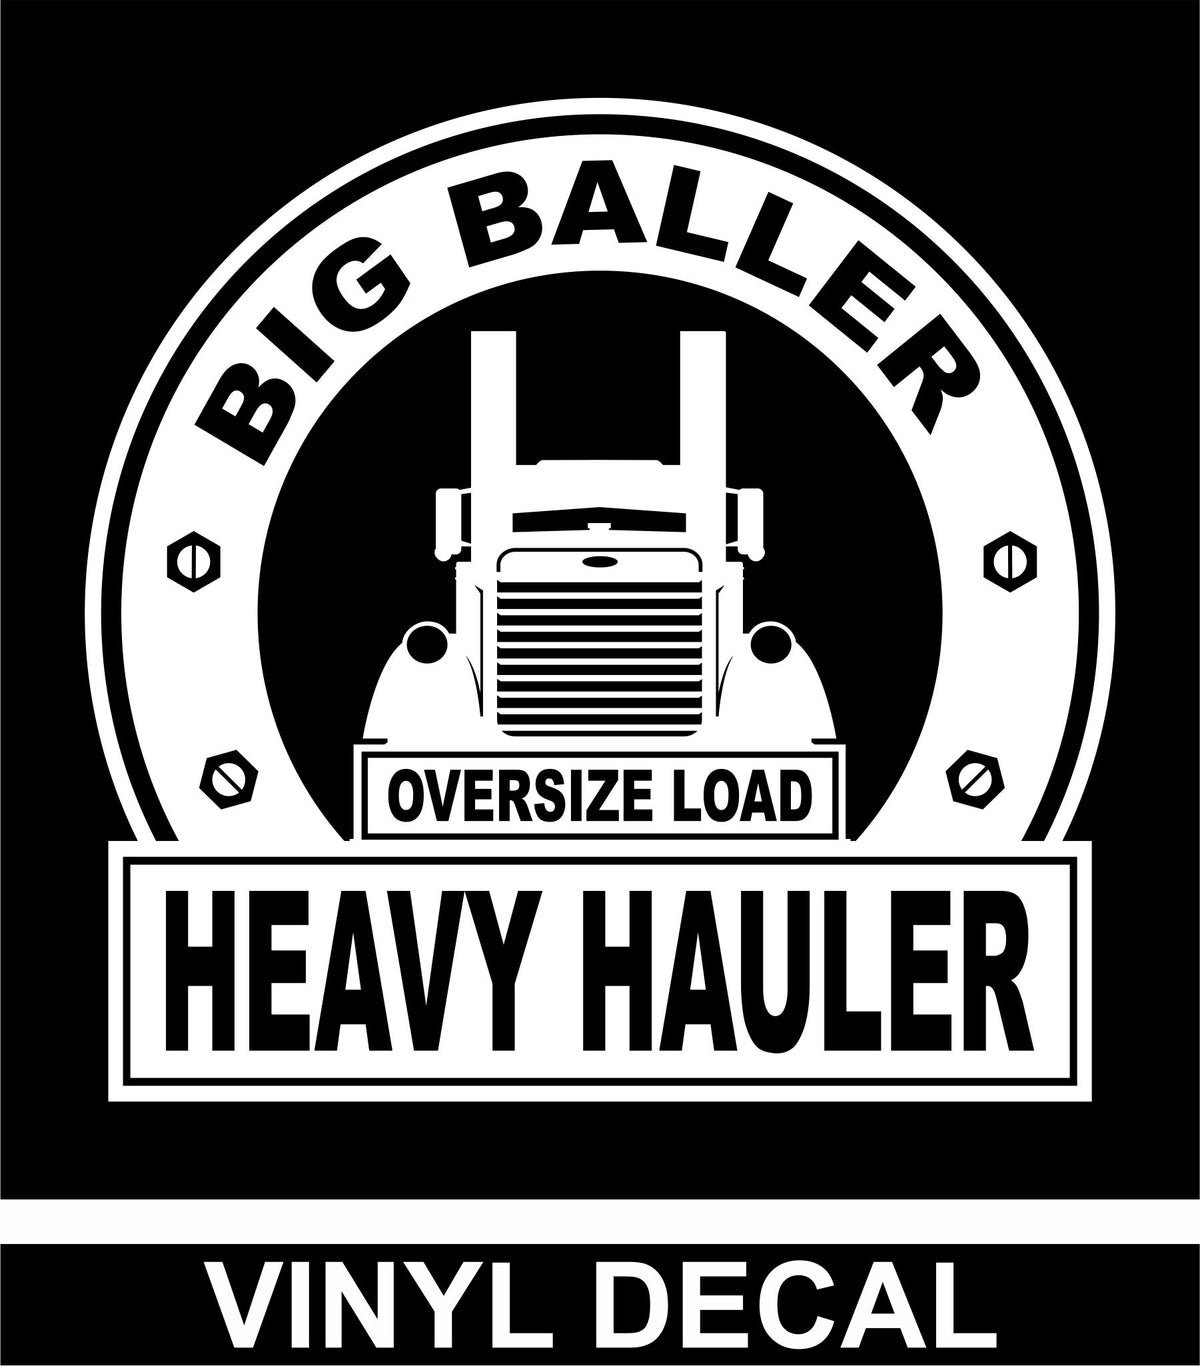 Big Baller Heavy Hauler - Pete - Vinyl Decal